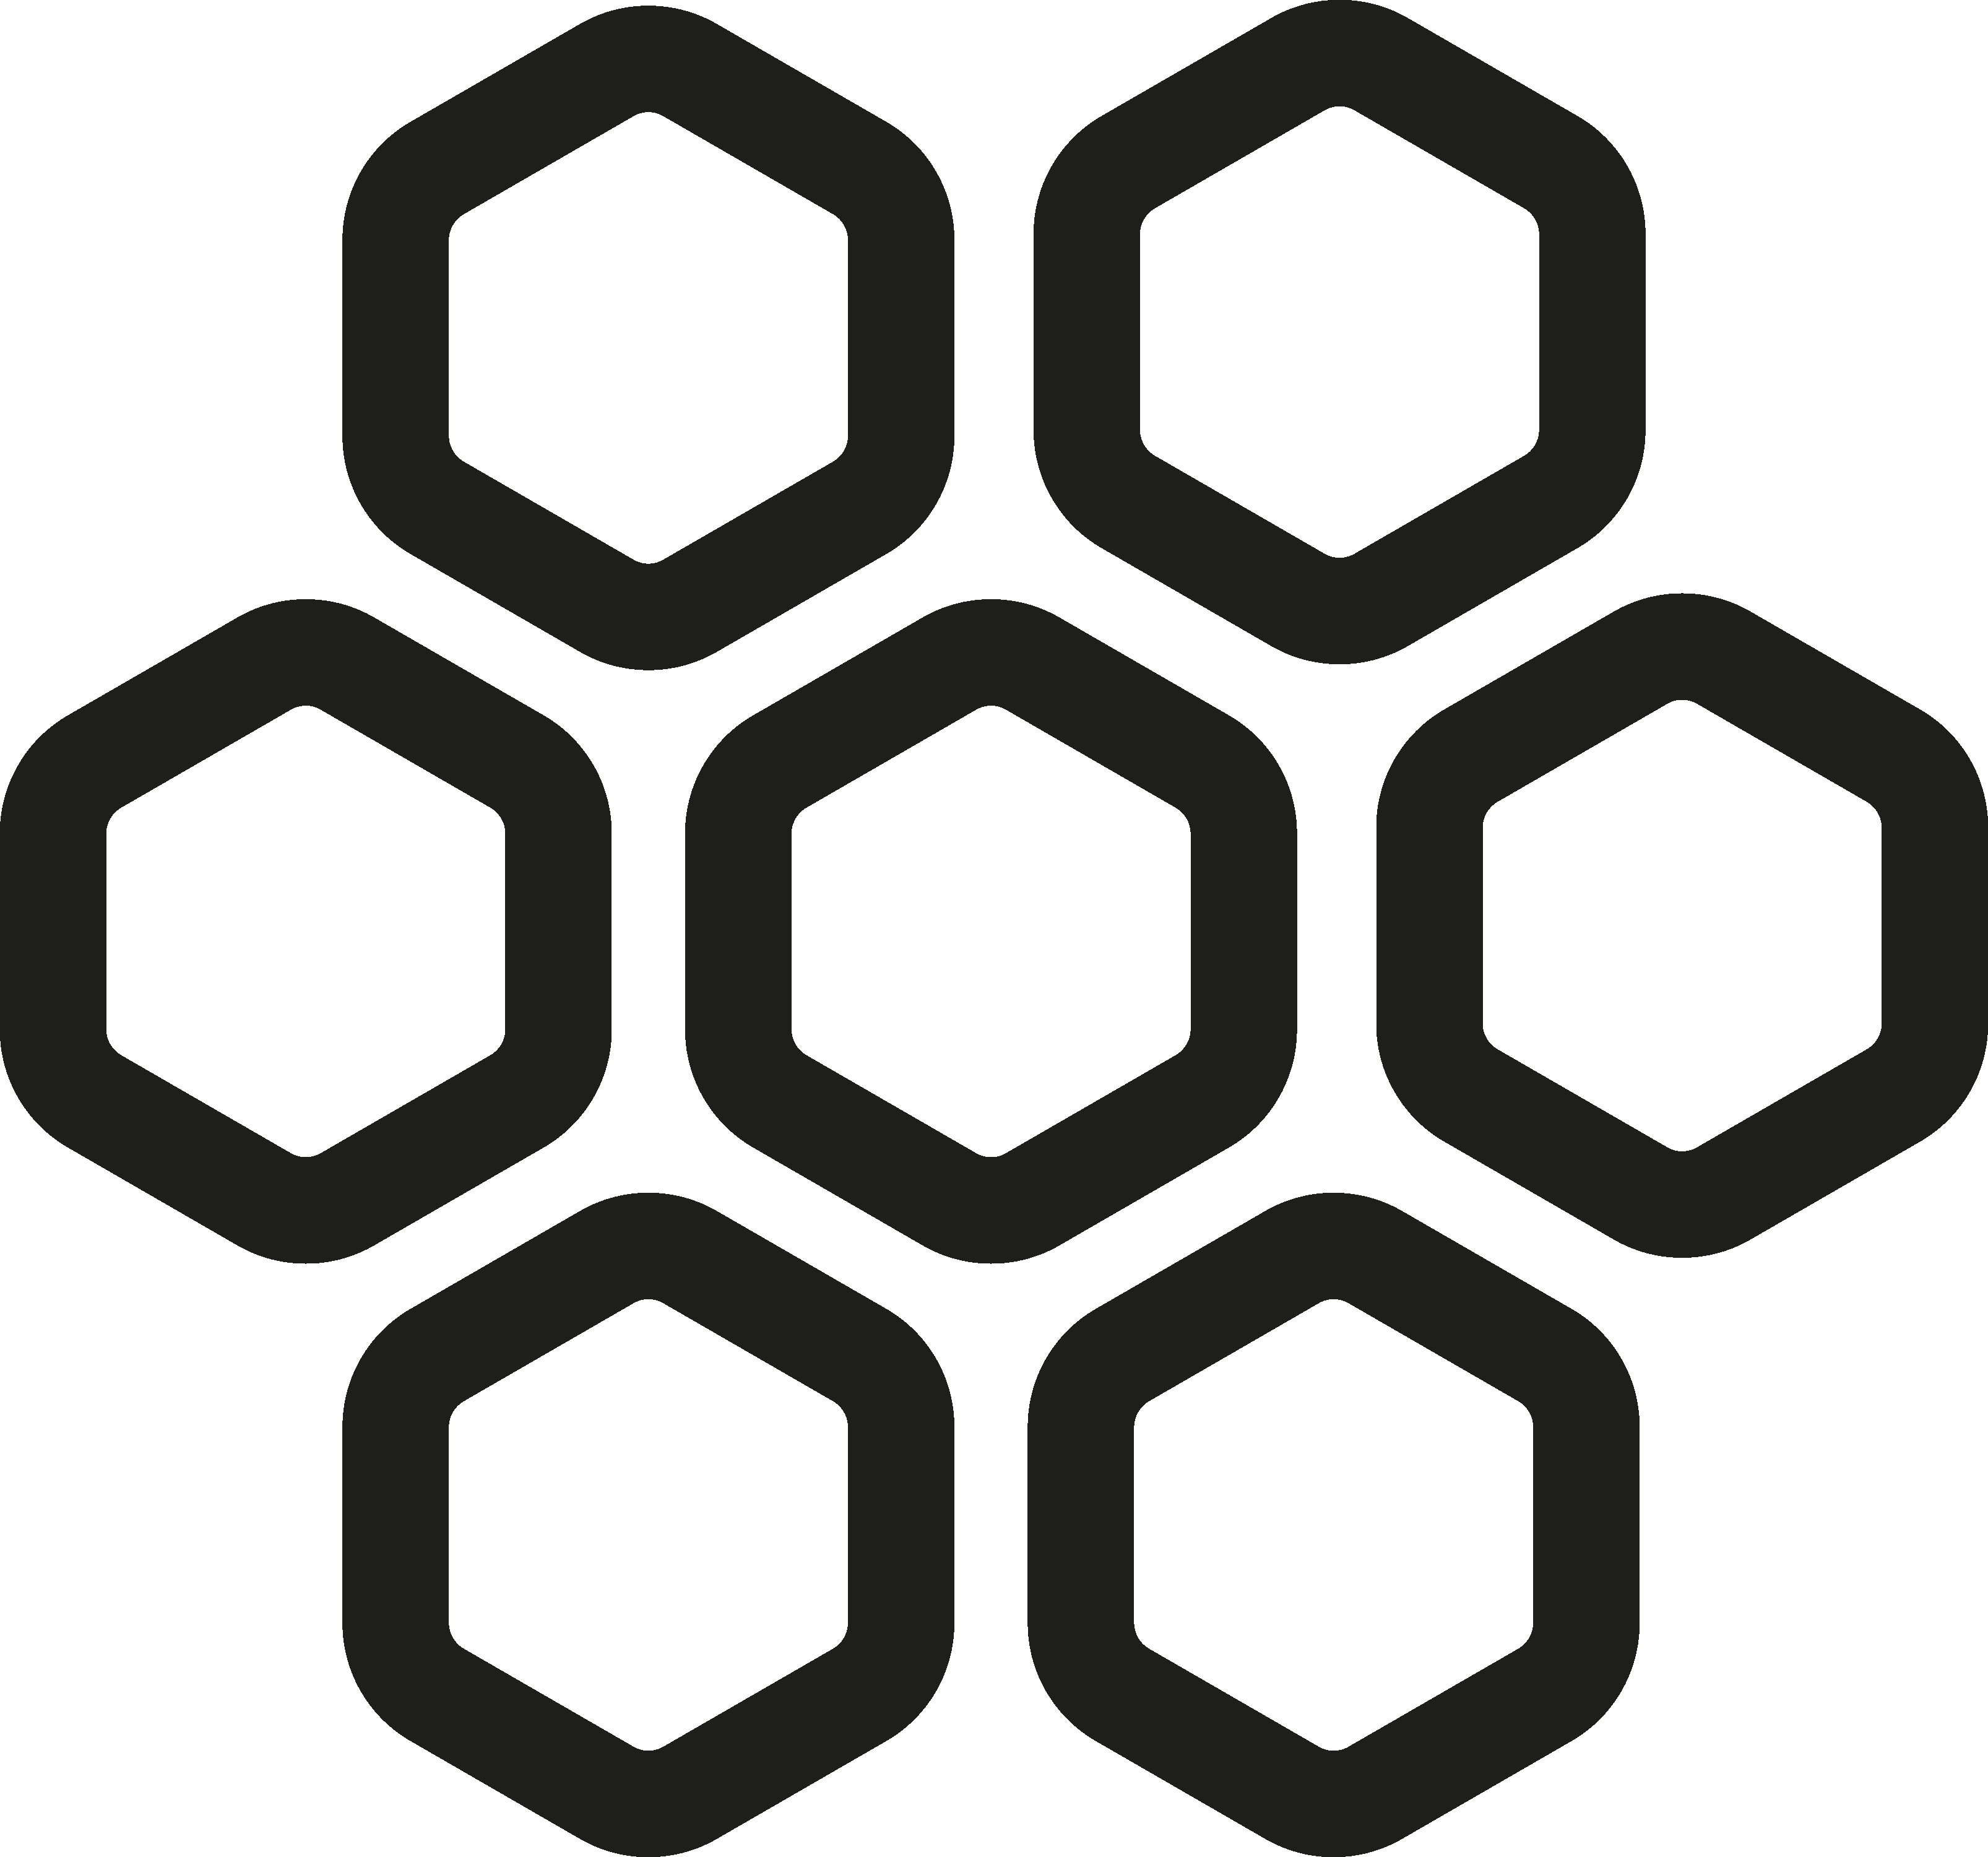 شش ضلعی های مشکی، استعاره از زیرمجموعه های مستقل و ساختاریافته مرکز تکمانو که کنار یکدیگر مانند سلول های کندو عسل فعالیت میکنند.